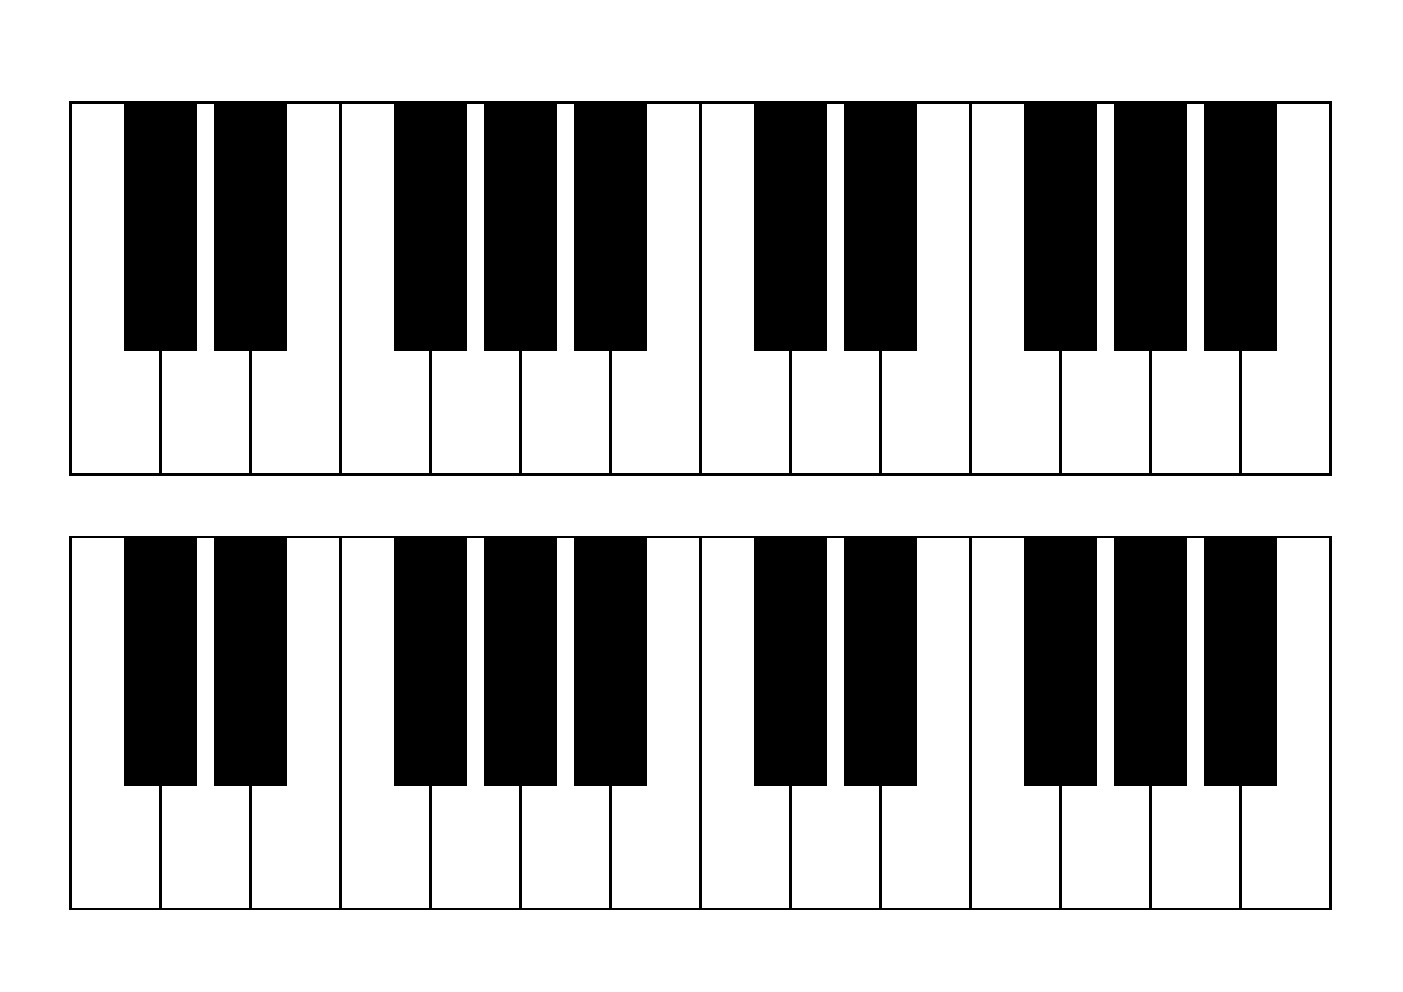 画钢琴键盘图简图图片